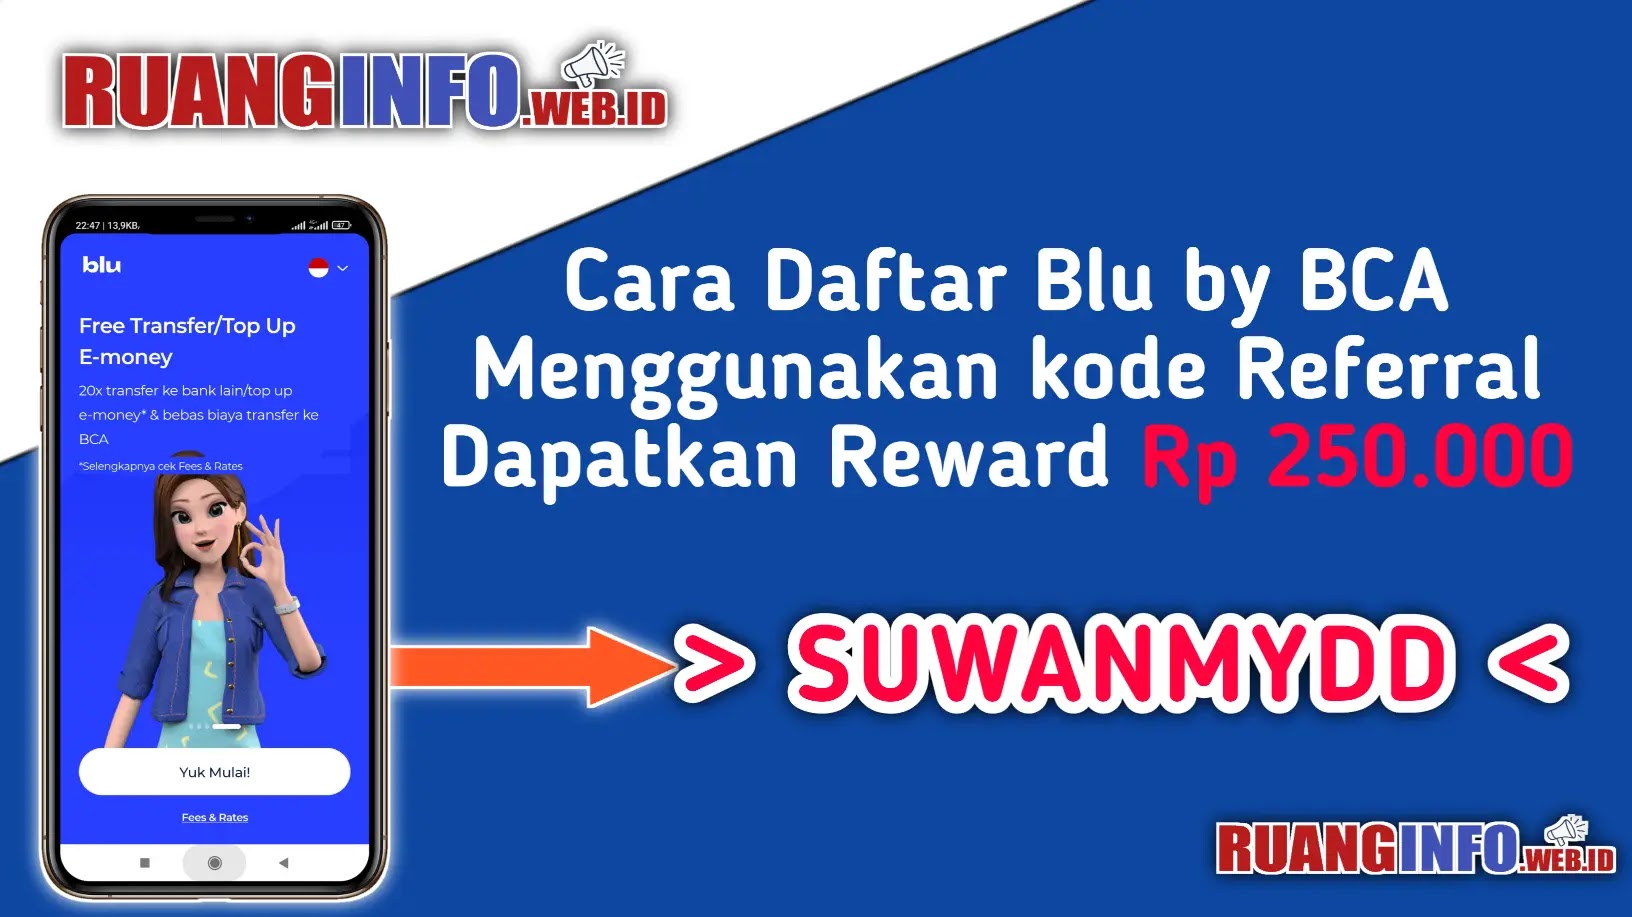 Cara Daftar Blu by BCA Menggunakan kode Referral Dapatkan Reward Rp 250.000